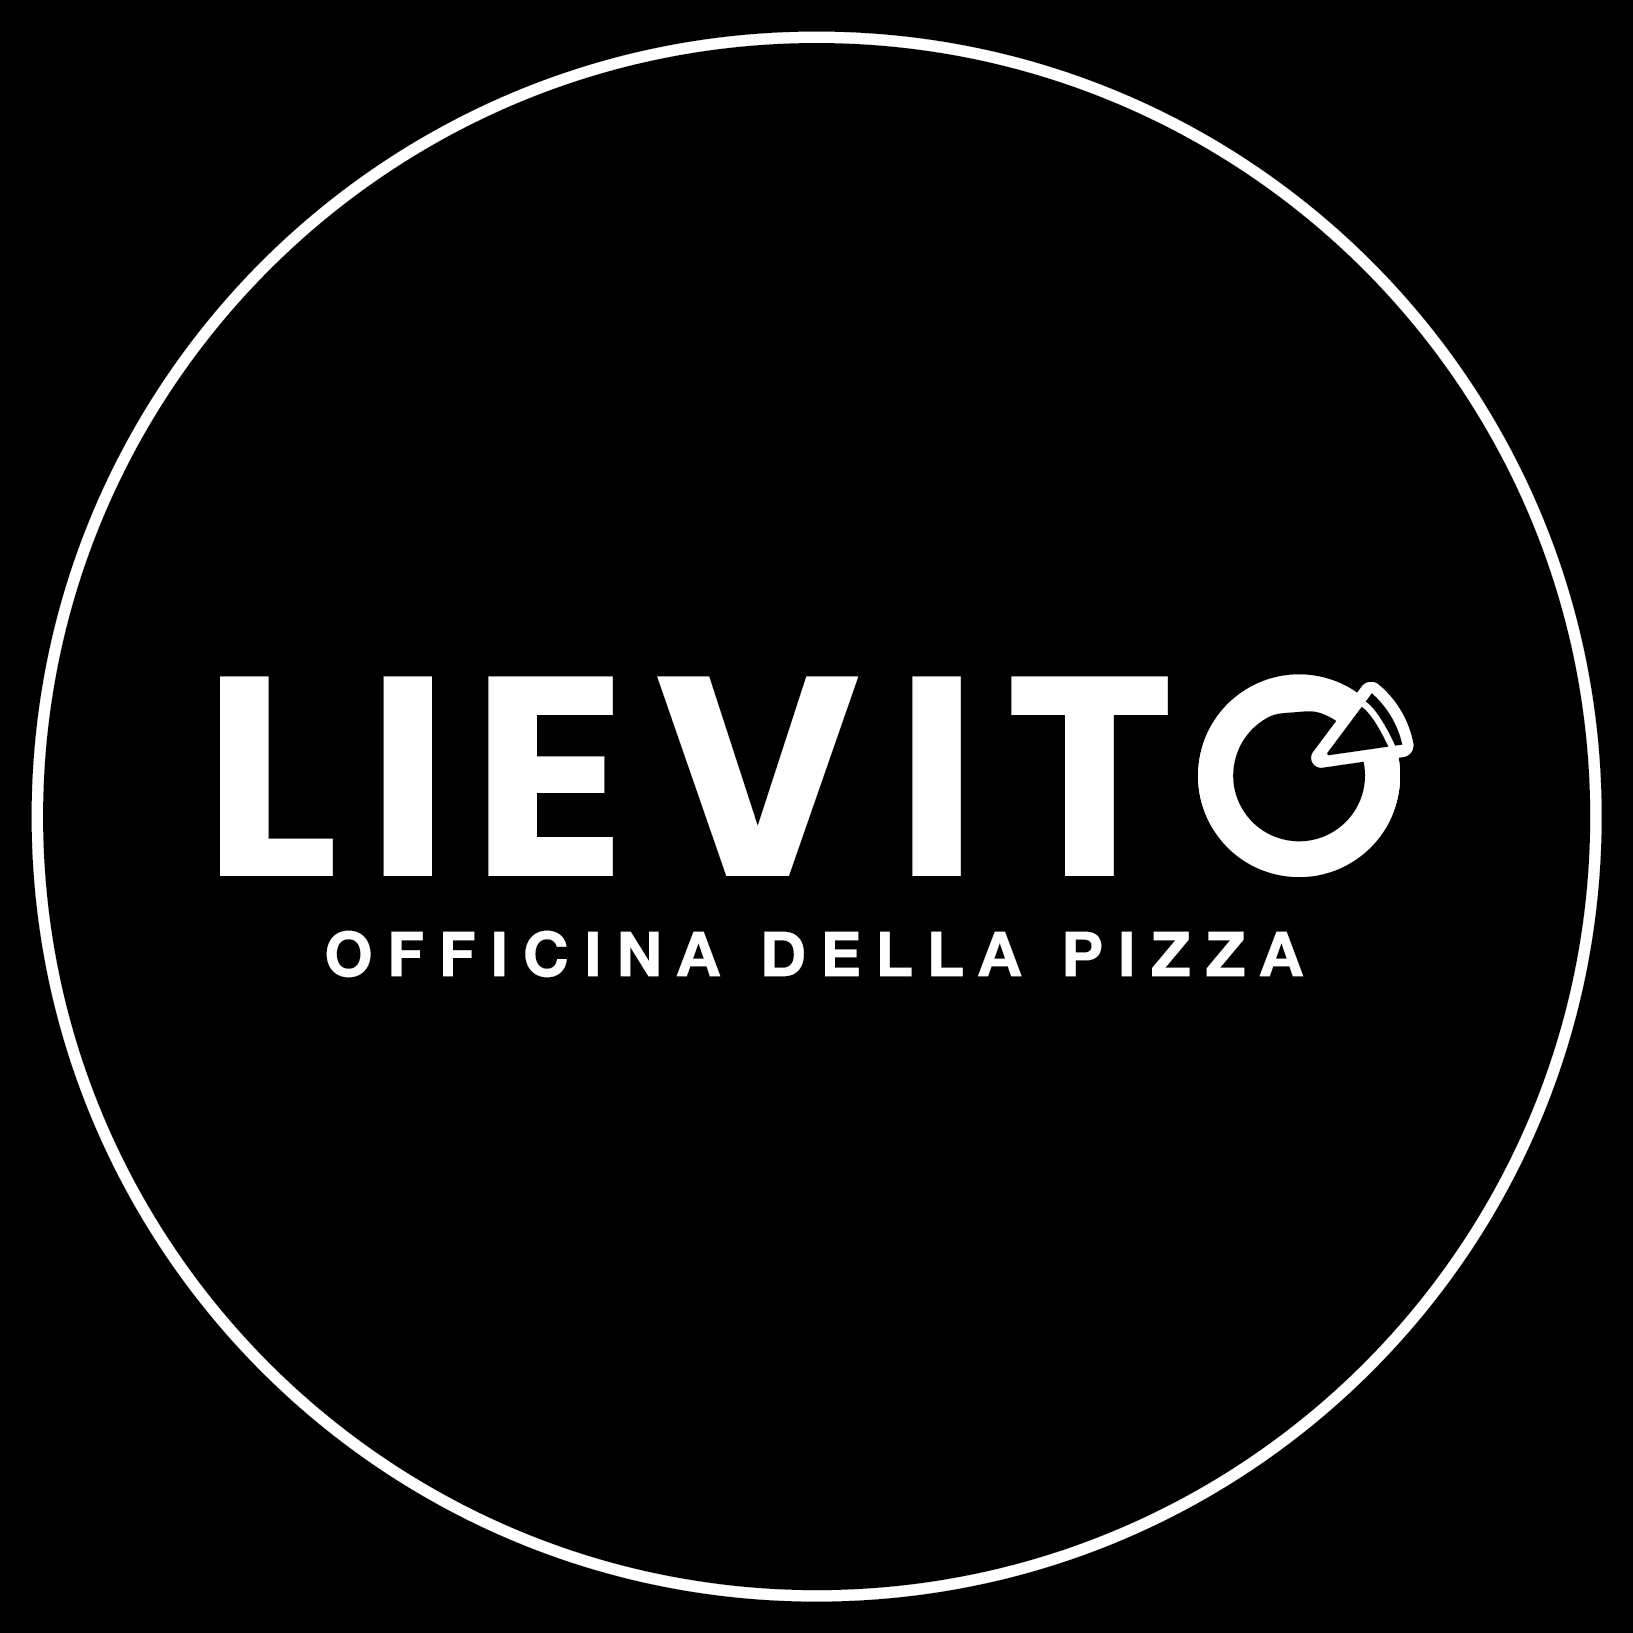 Lievito - Officina della Pizza